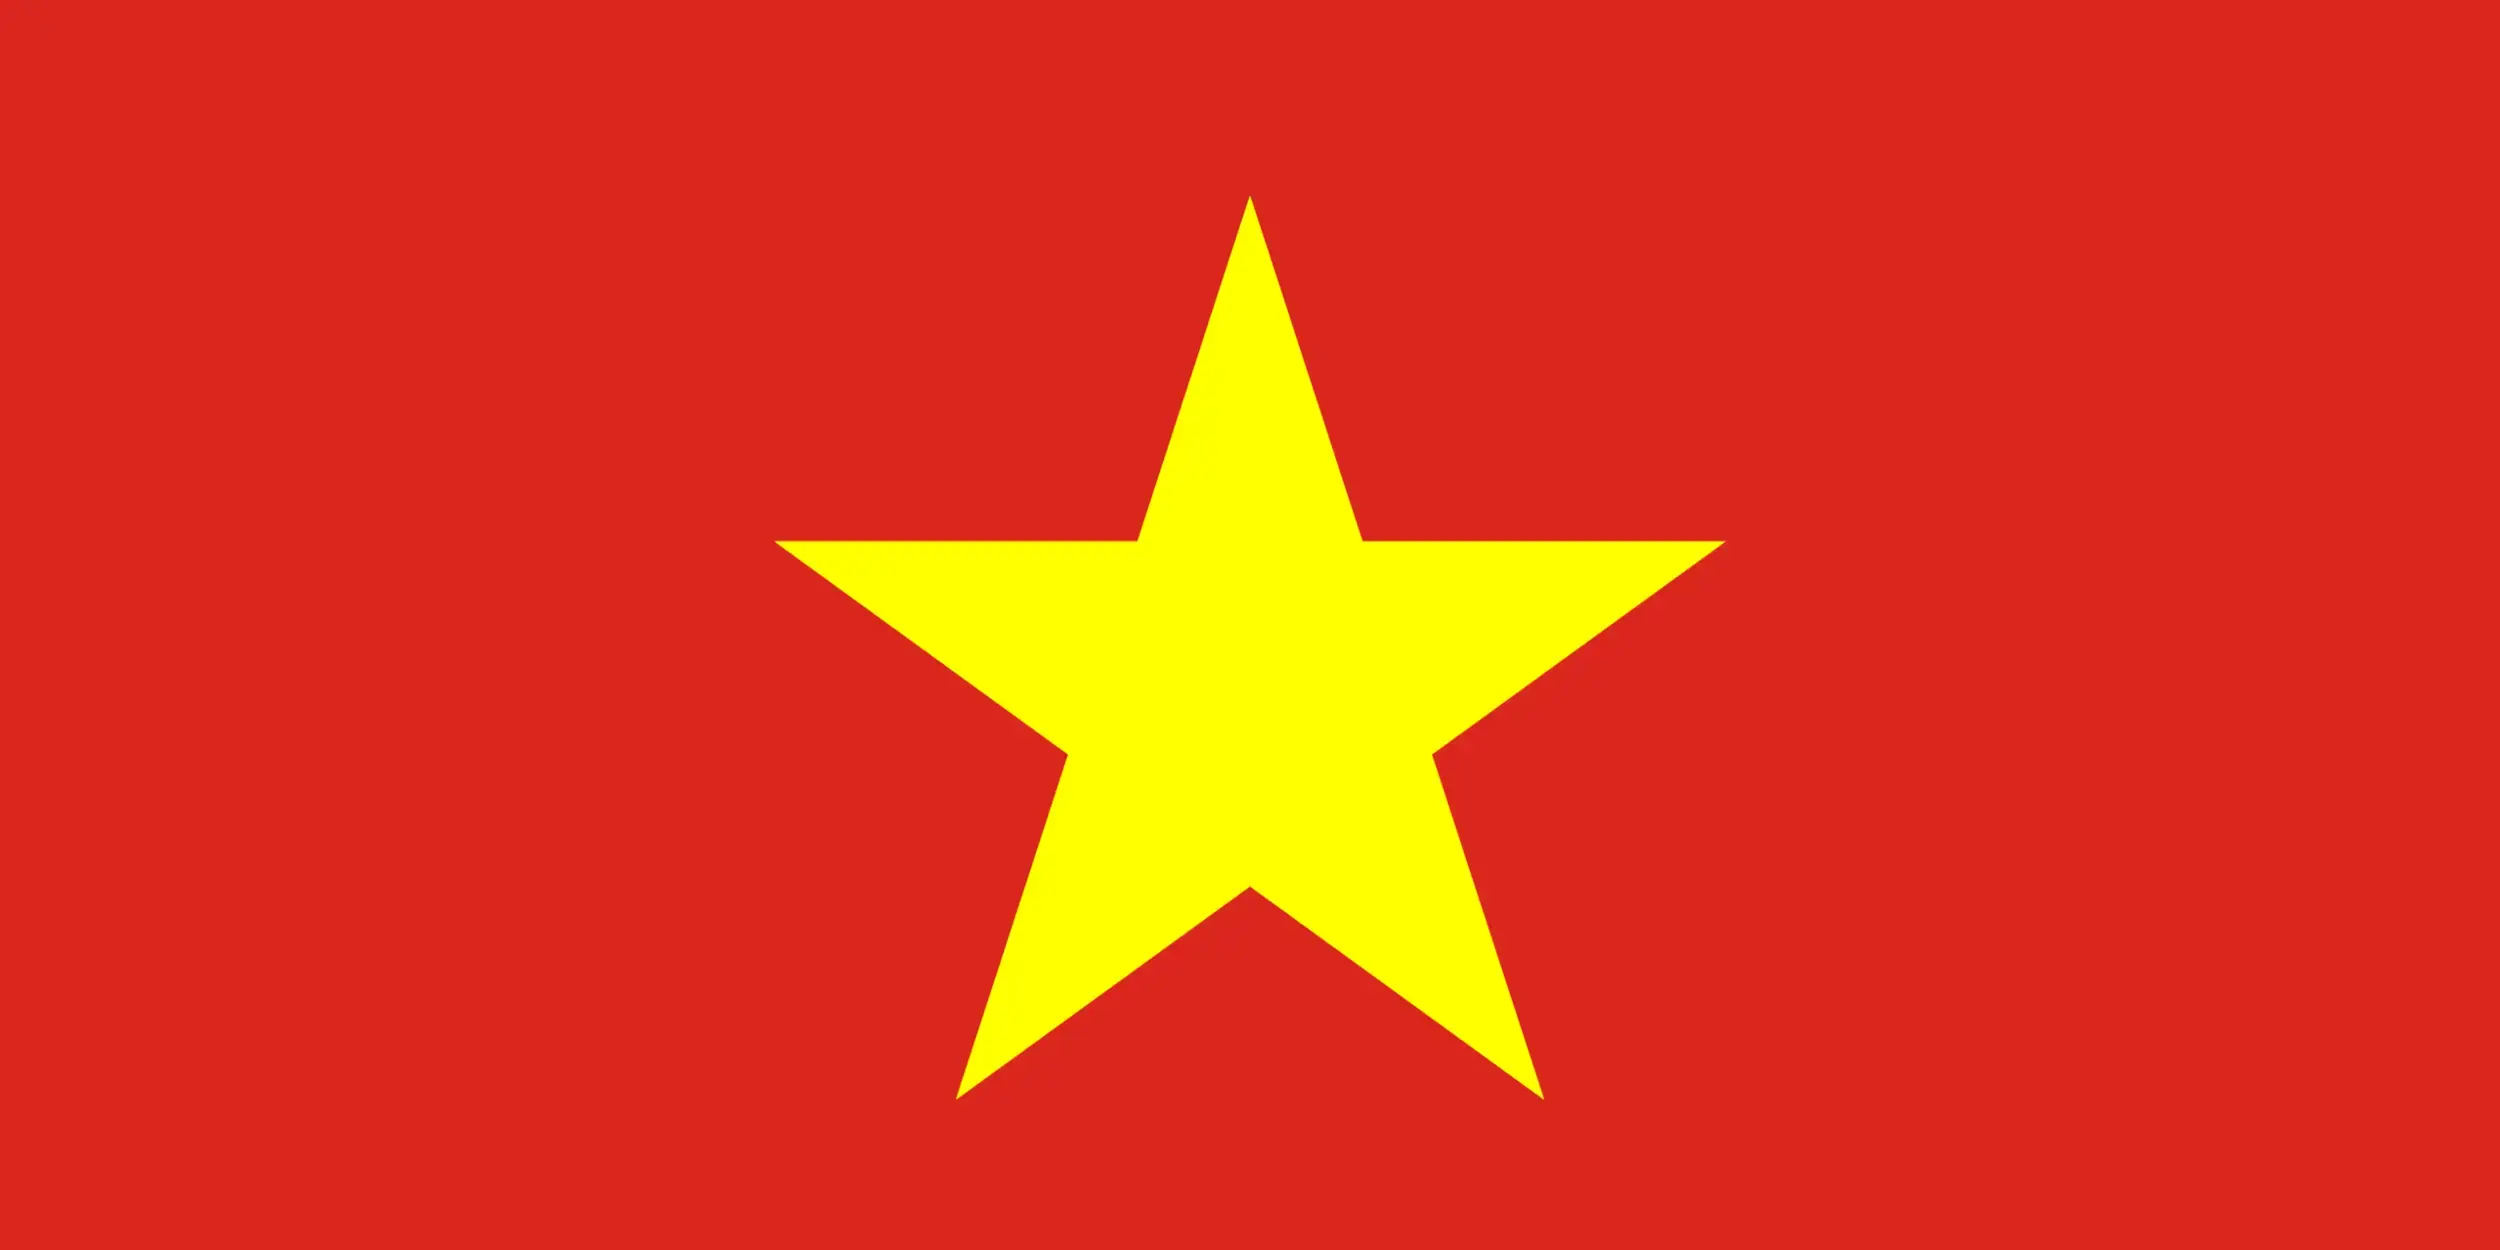 3 Weeks in Vietnam